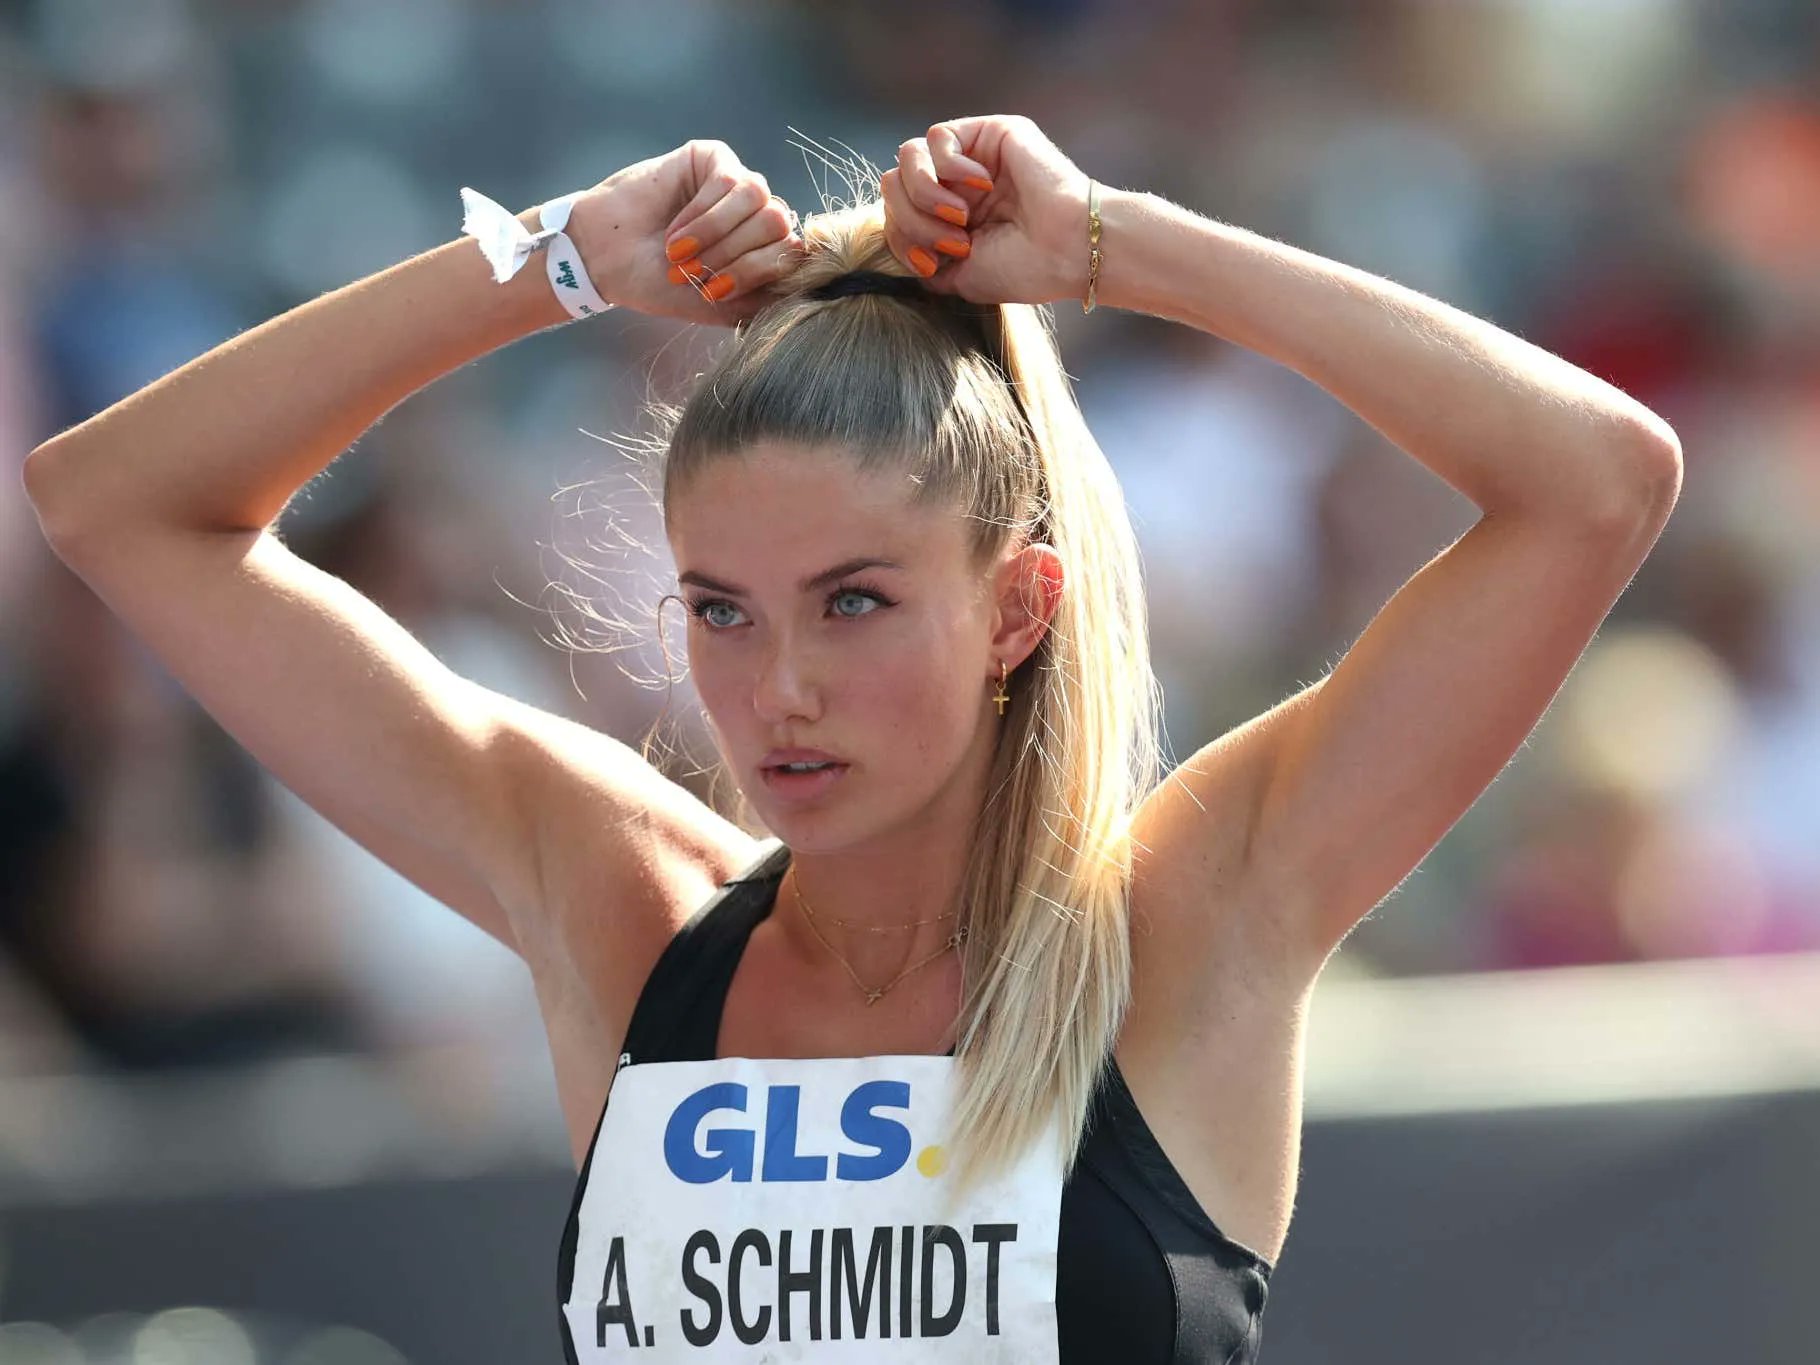 Η πιο σέξι αθλήτρια στον κόσμο: Ένας ανεπιθύμητος τίτλος για την Άλικα Σμιτ